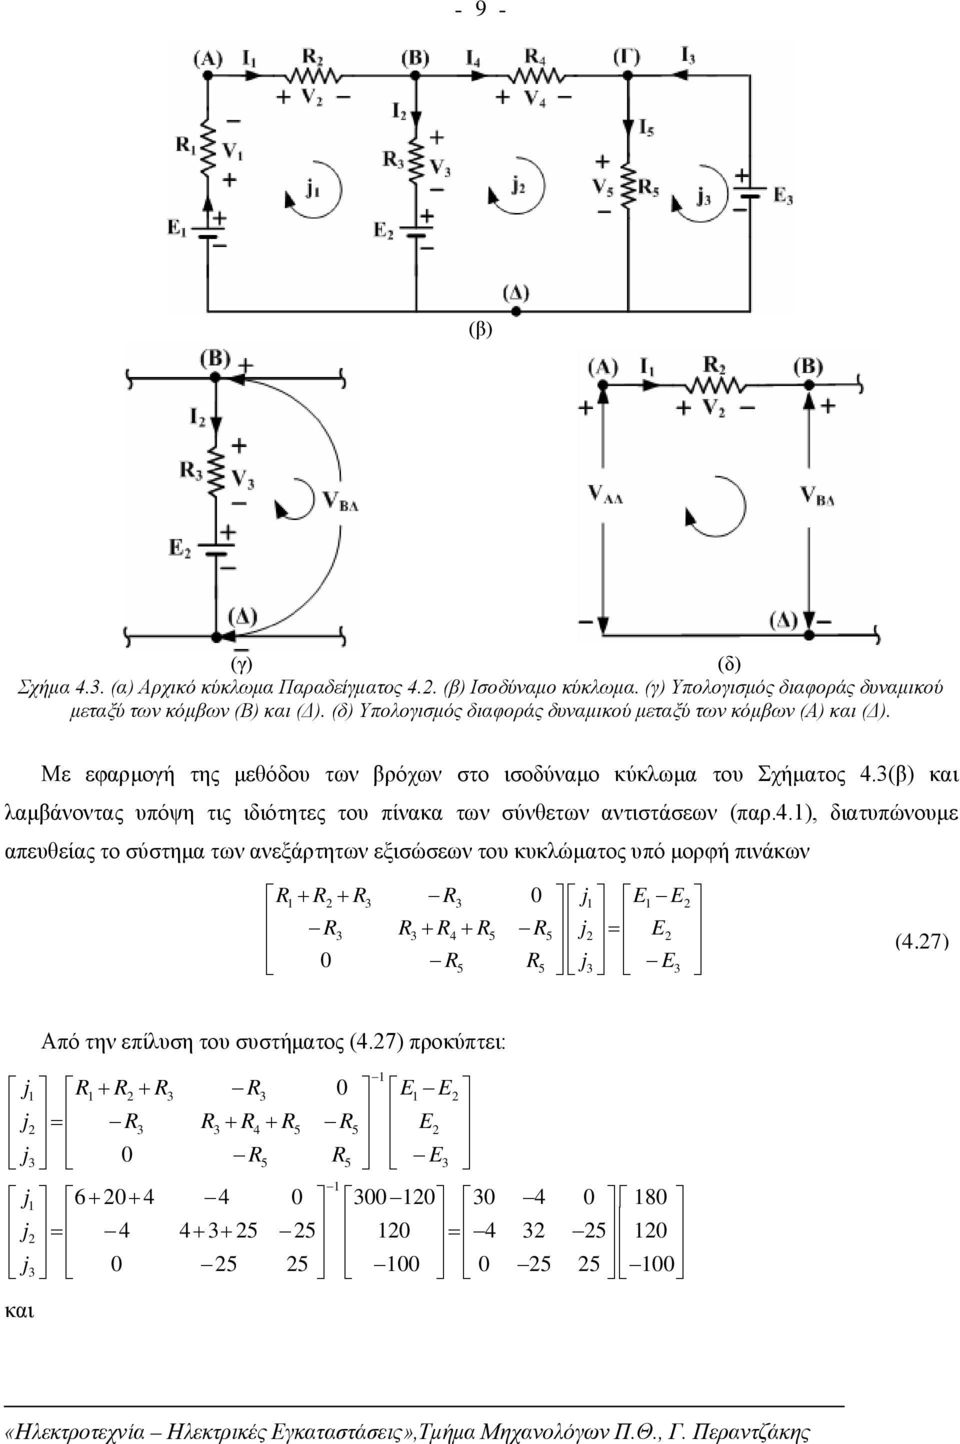 (β) και λαμβάνοντας υπόψη τις ιδιότητες του πίνακα των σύνθετων αντιστάσεων (παρ.4.